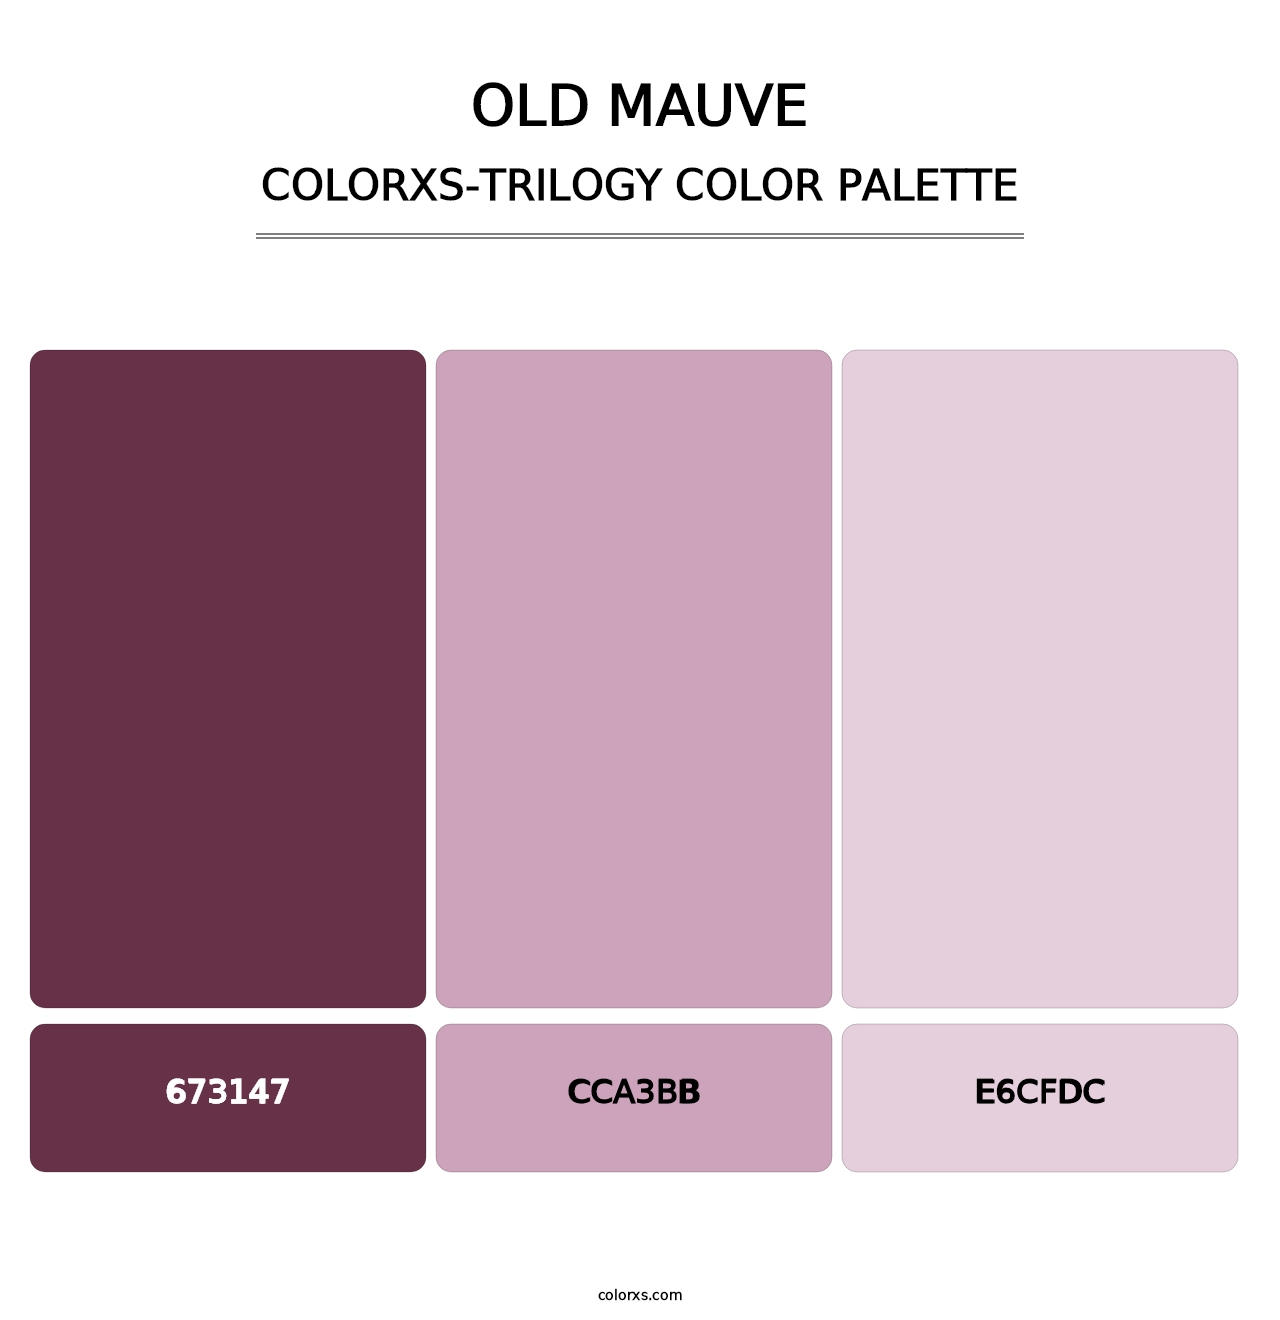 Old Mauve - Colorxs Trilogy Palette